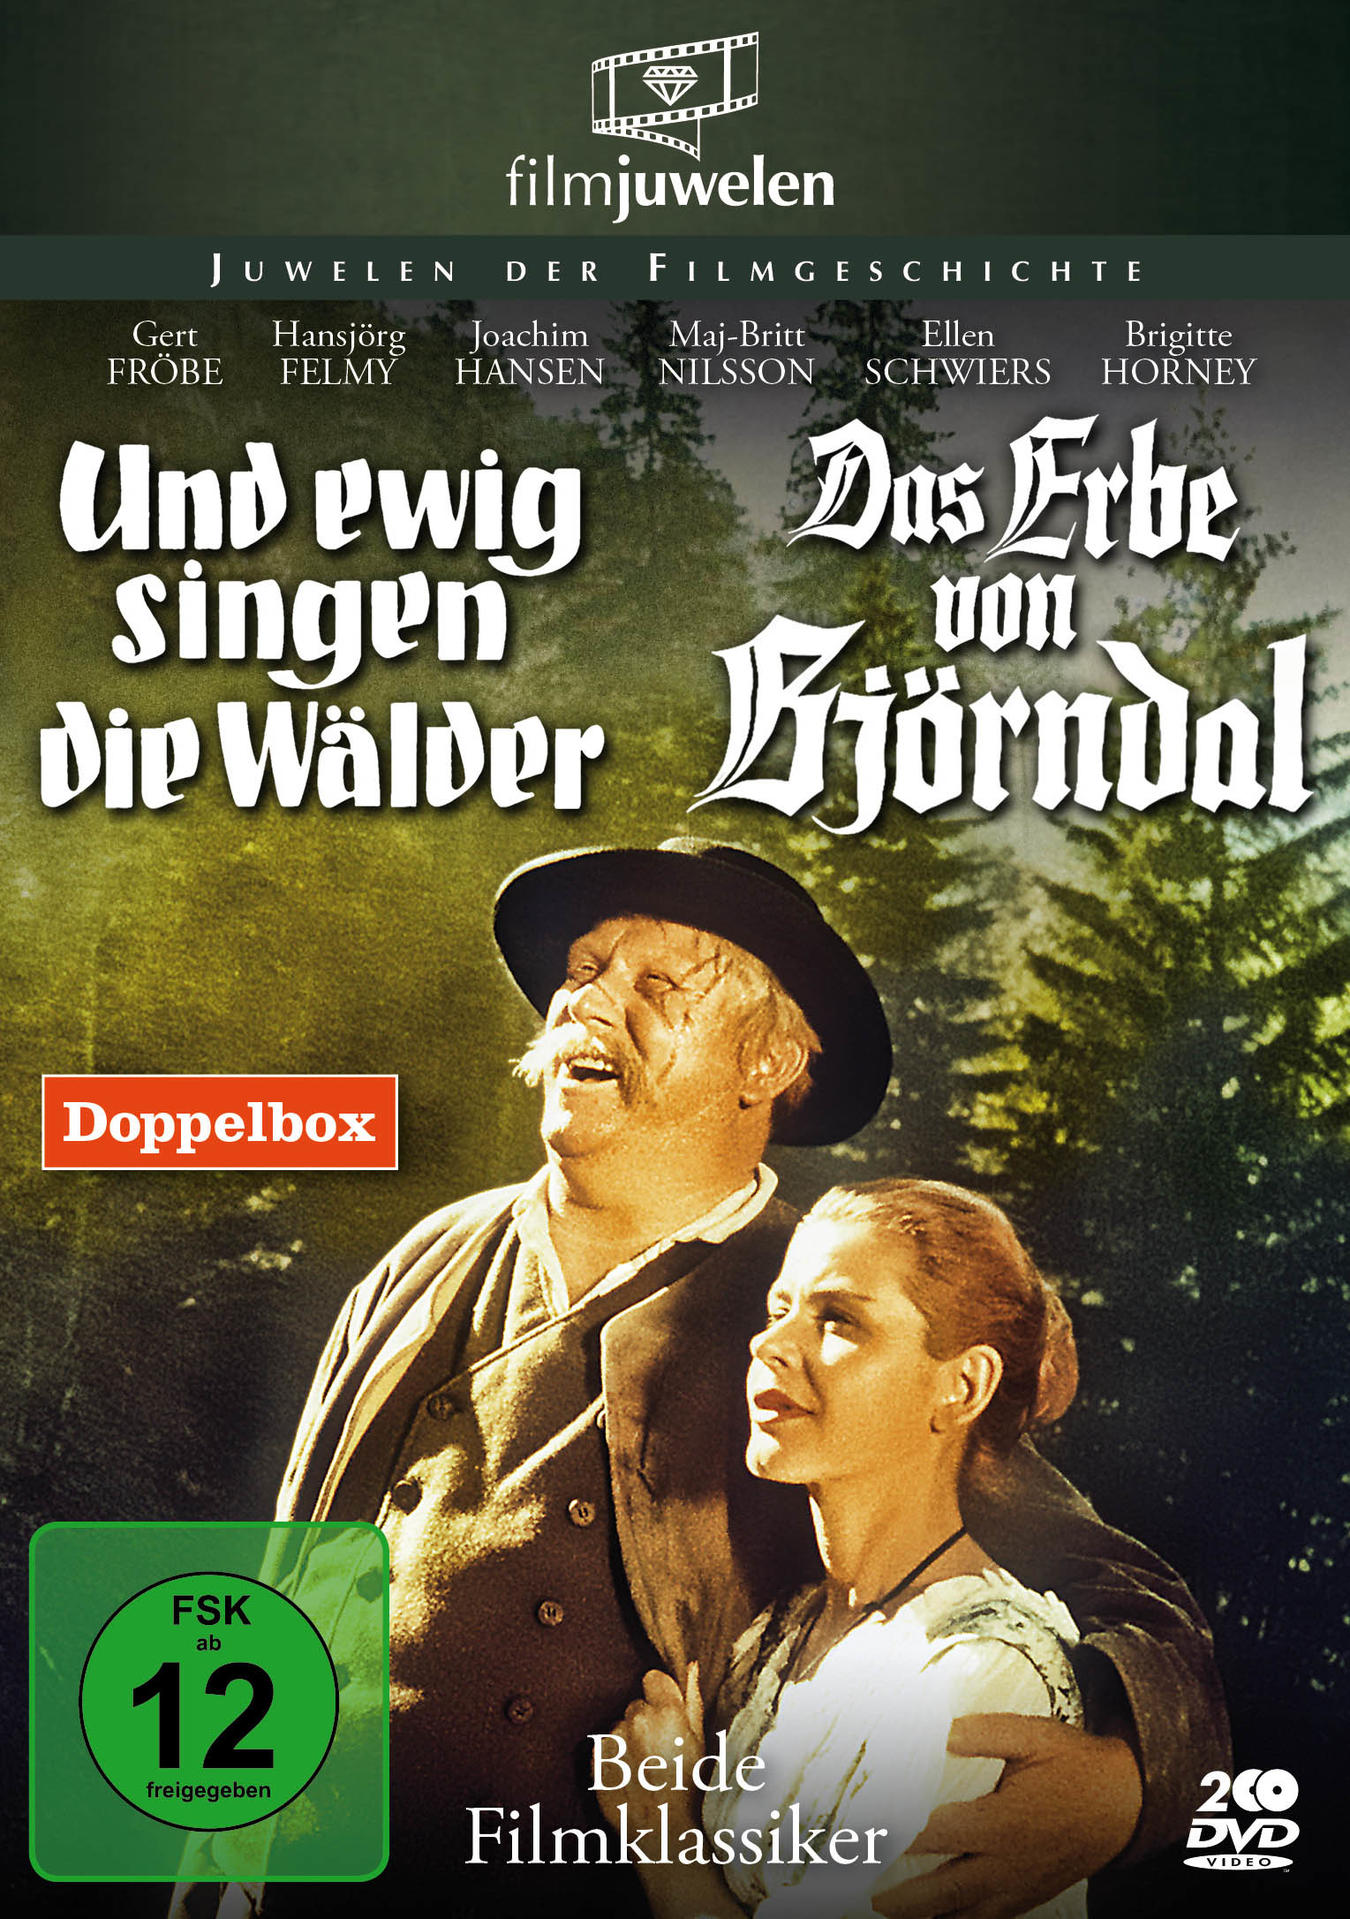 Und ewig von singen die Erbe Wälder Björndal Das DVD 